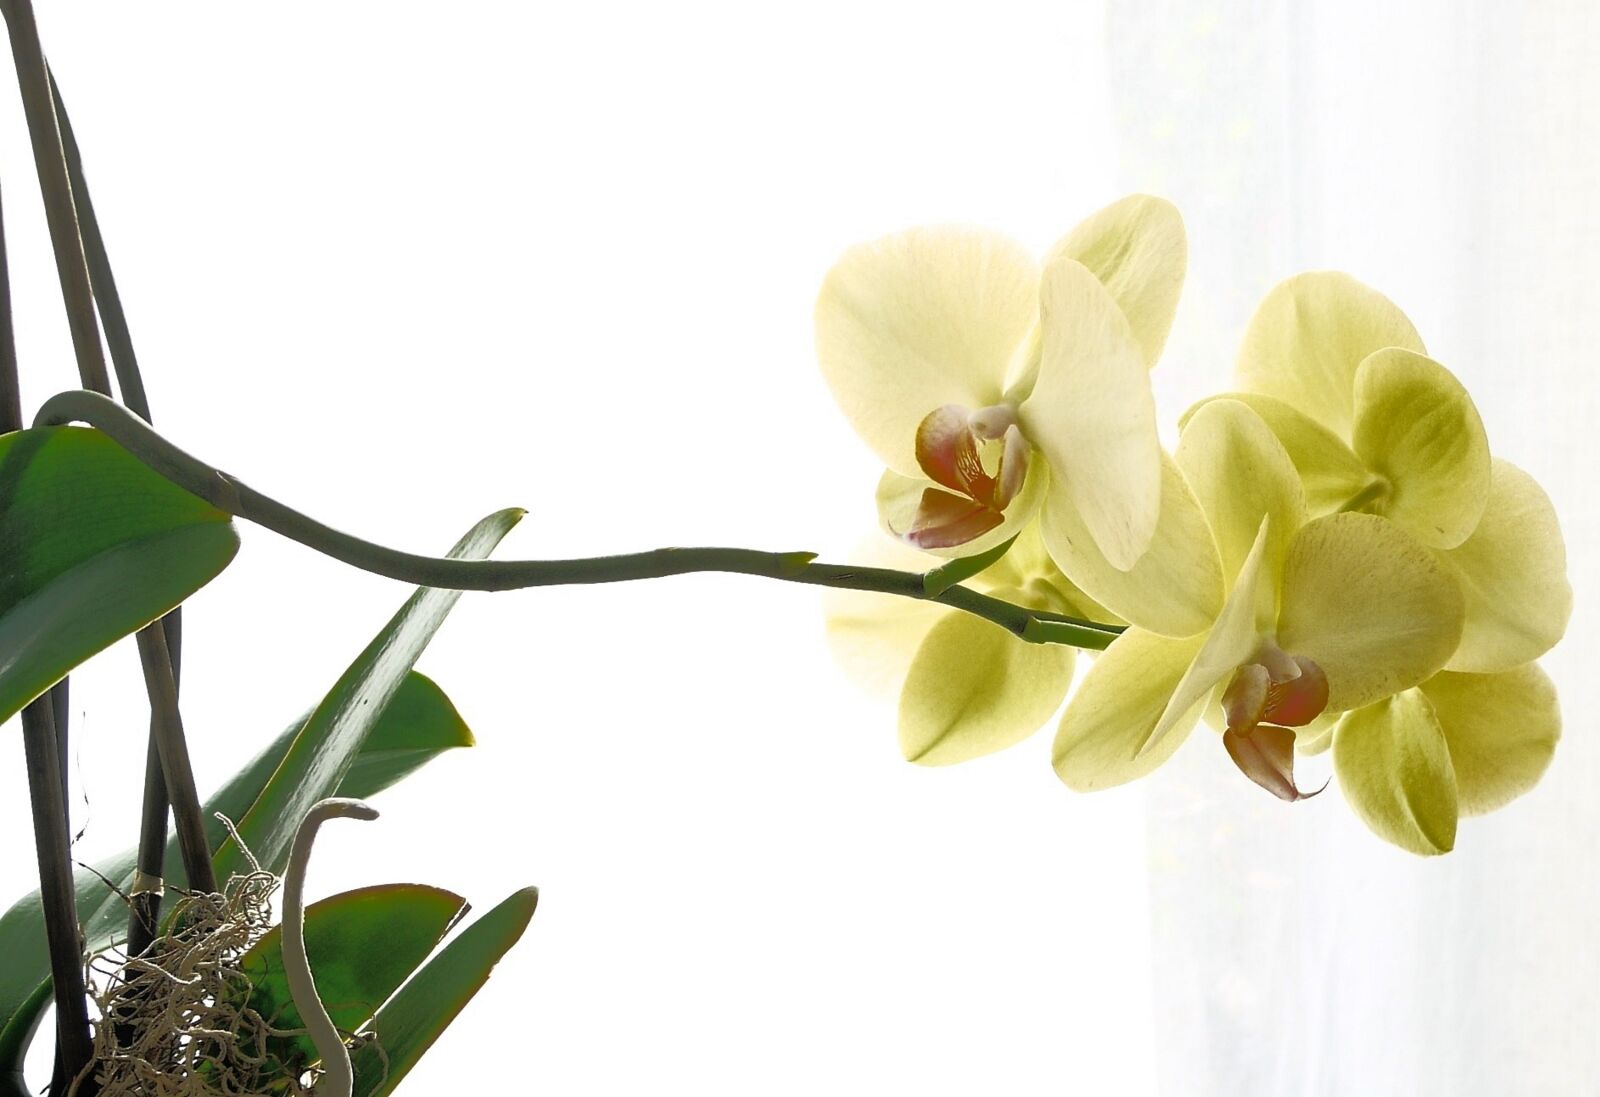 Panasonic Lumix DMC-G1 sample photo. Orchid, beautiful, yellow photography